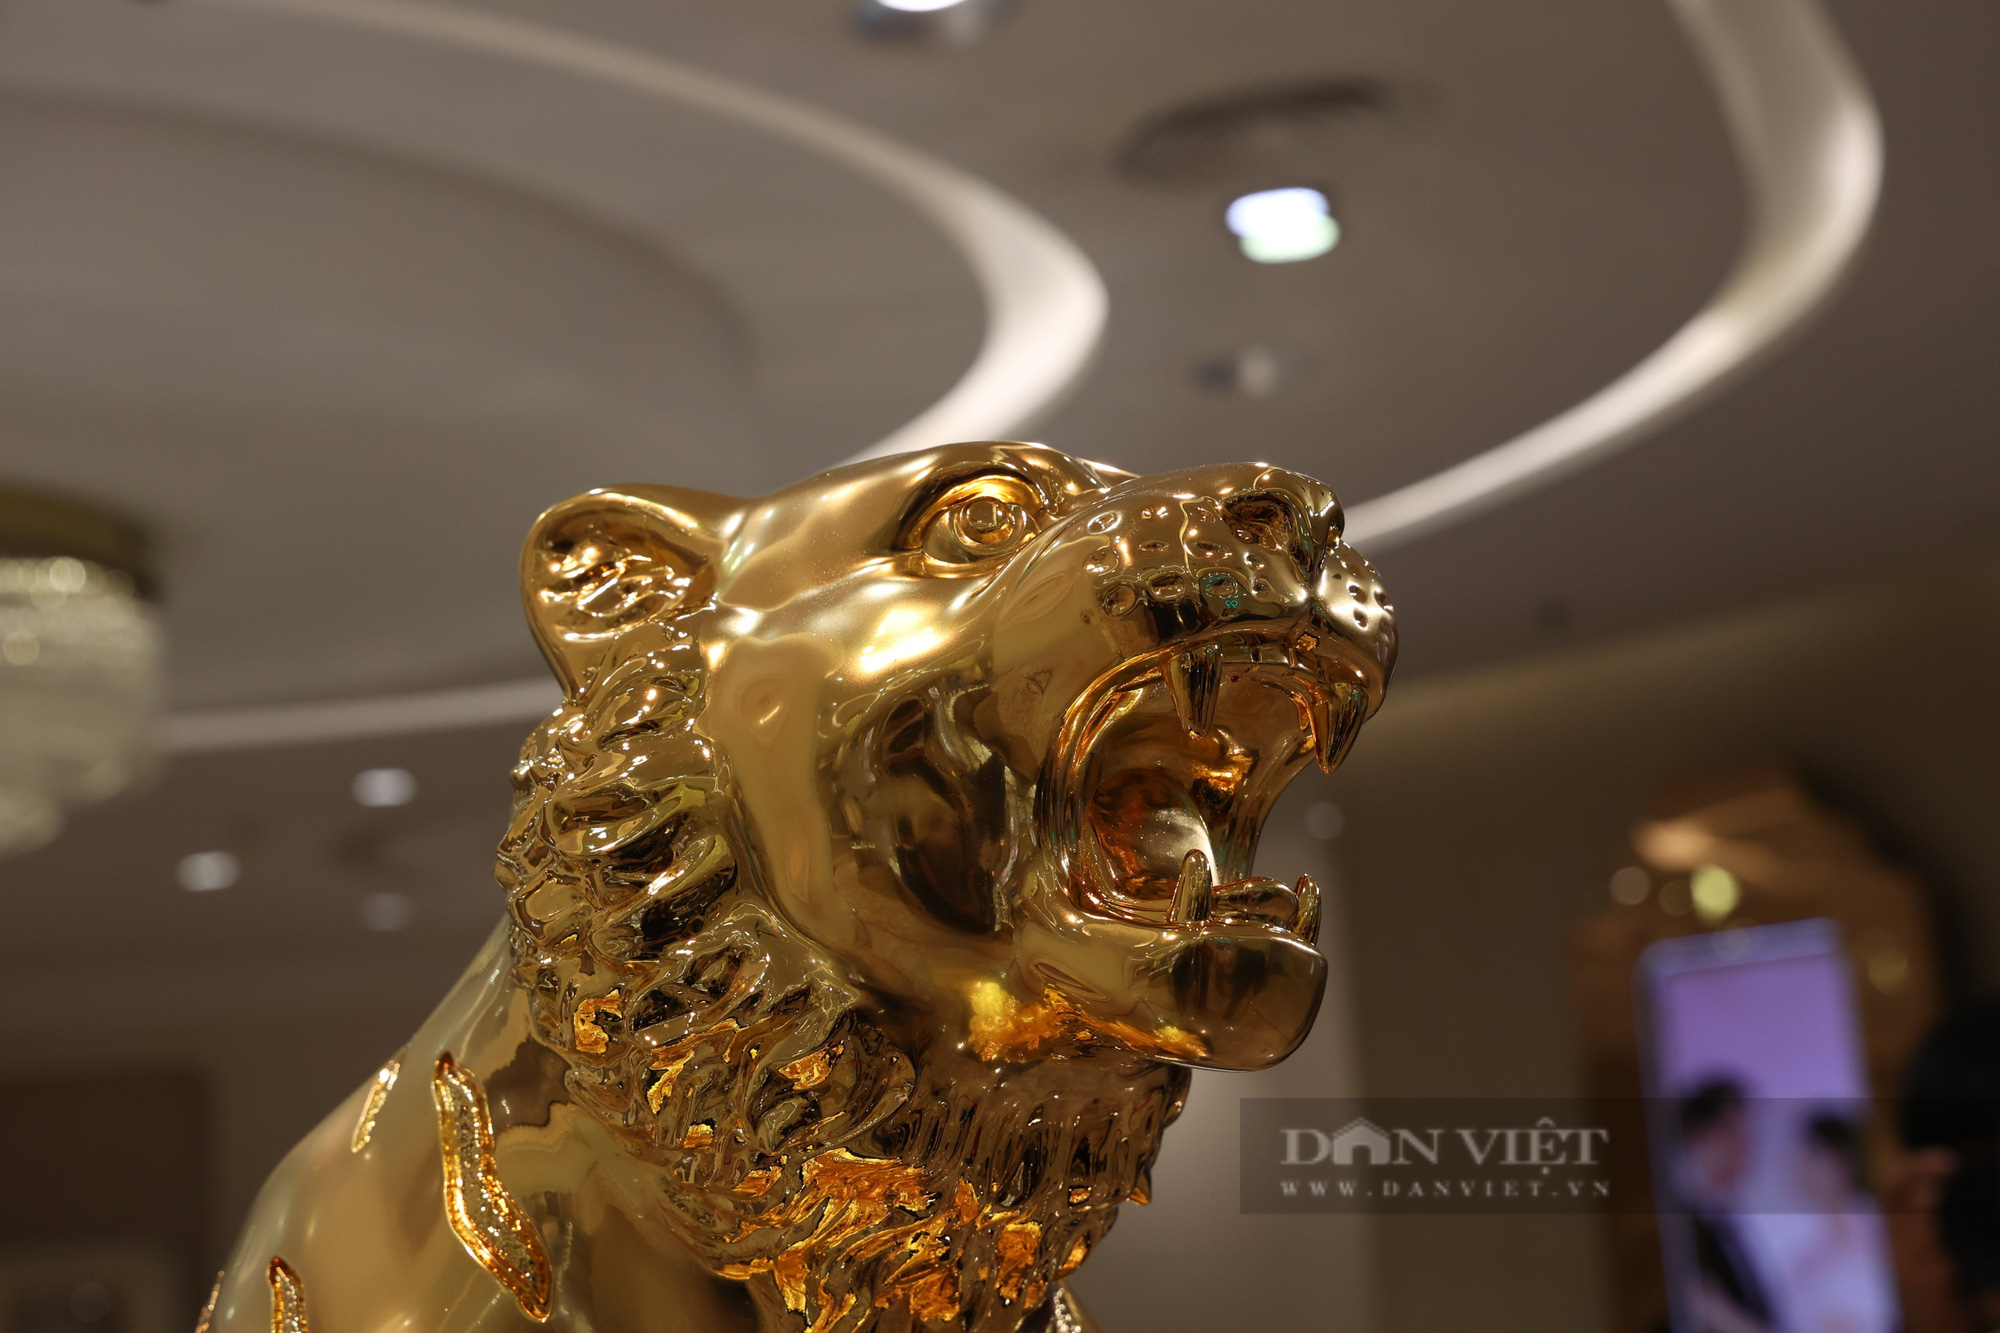 Hổ vàng nặng 46kg, giá gần 3 tỉ đồng trong ngày vía Thần tài - Ảnh 2.